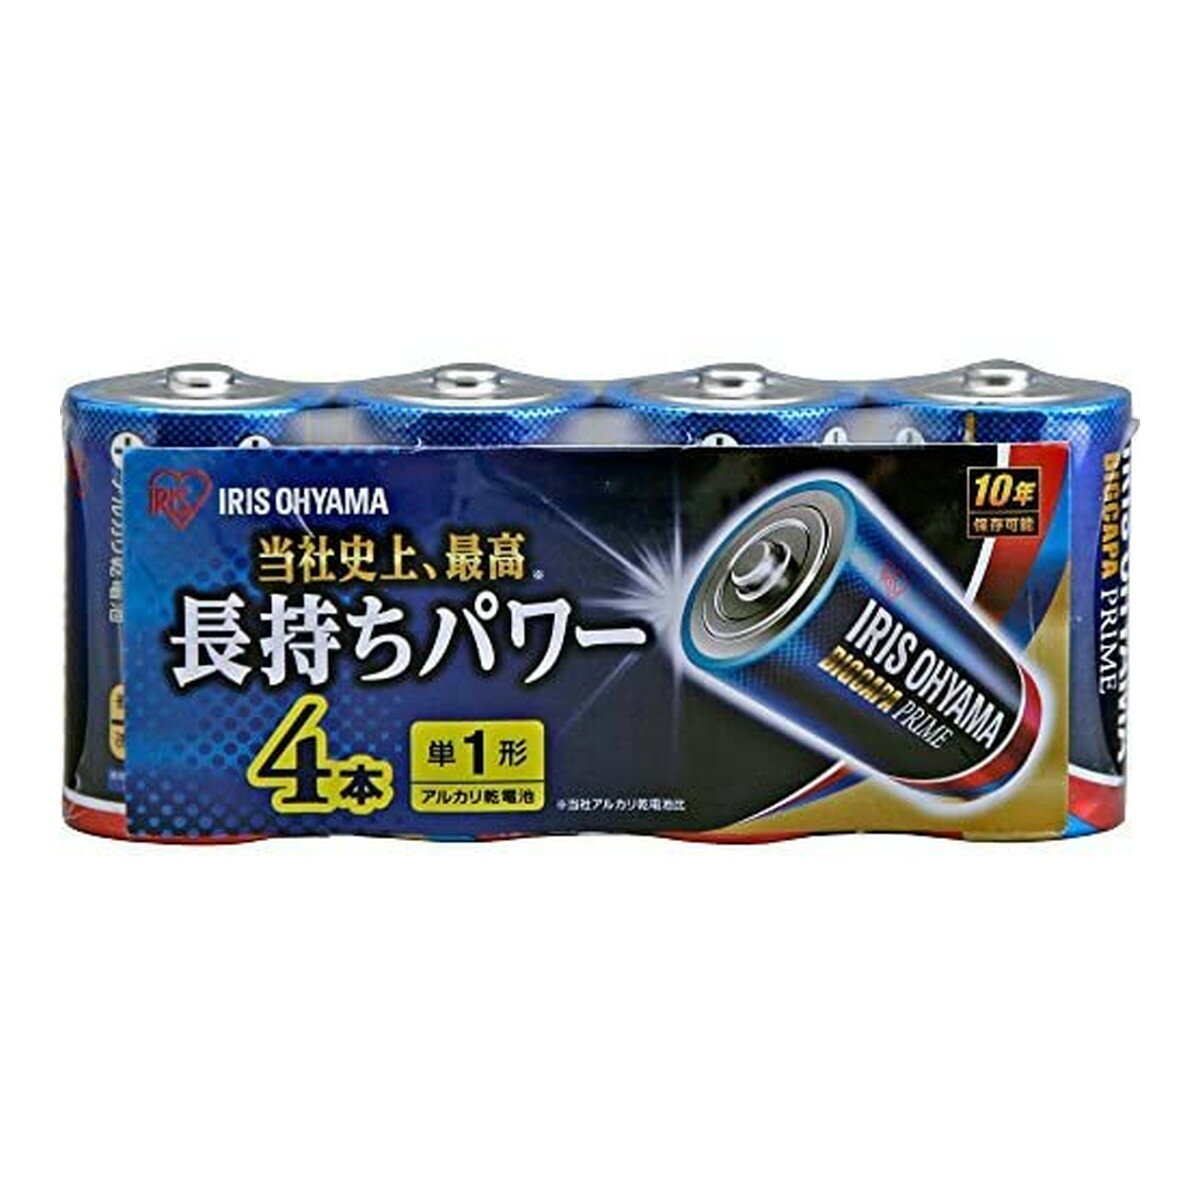 商品名：アイリスオーヤマ アルカリ乾電池 BIGCAPA PRIME 単1形 4本パック LR20BP/4P内容量：4本JANコード：4967576335287発売元、製造元、輸入元又は販売元：アイリスオーヤマ原産国：中華人民共和国商品番号：101-40701商品説明長寿命・大容量タイプのアルカリ乾電池です。保存可能期間10年です。広告文責：アットライフ株式会社TEL 050-3196-1510 ※商品パッケージは変更の場合あり。メーカー欠品または完売の際、キャンセルをお願いすることがあります。ご了承ください。